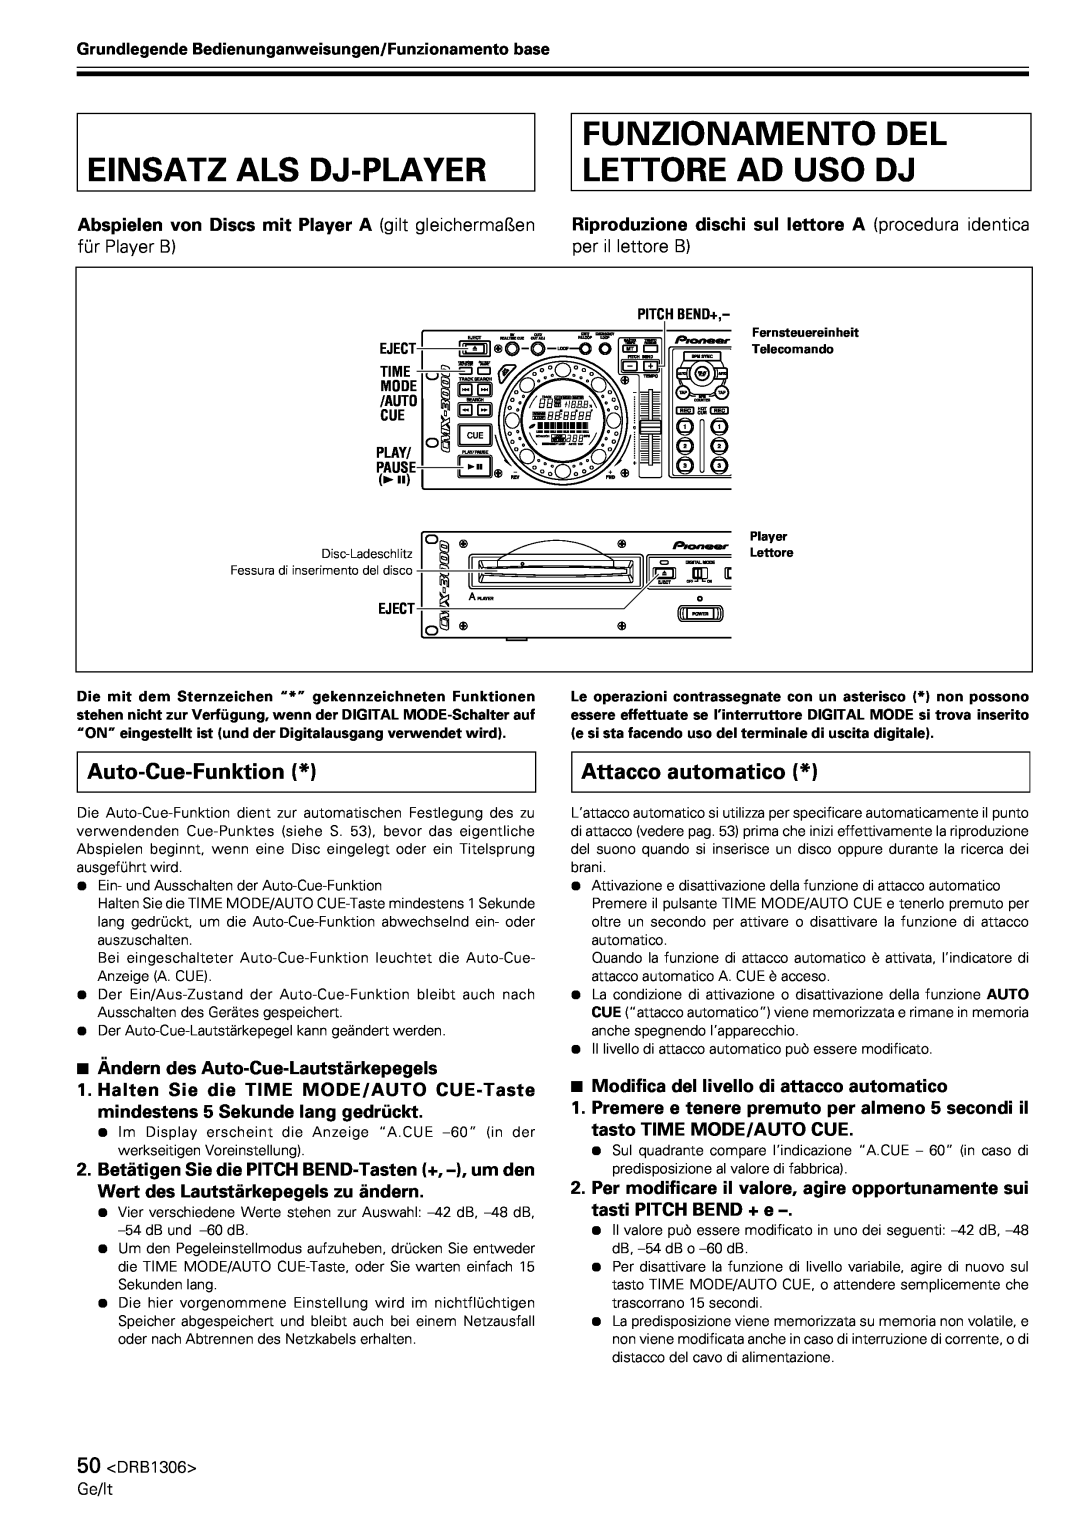 Pioneer CMX-3000 Einsatz Als Dj-Player, Funzionamento Del Lettore Ad Uso Dj, Auto-Cue-Funktion, Attacco automatico 